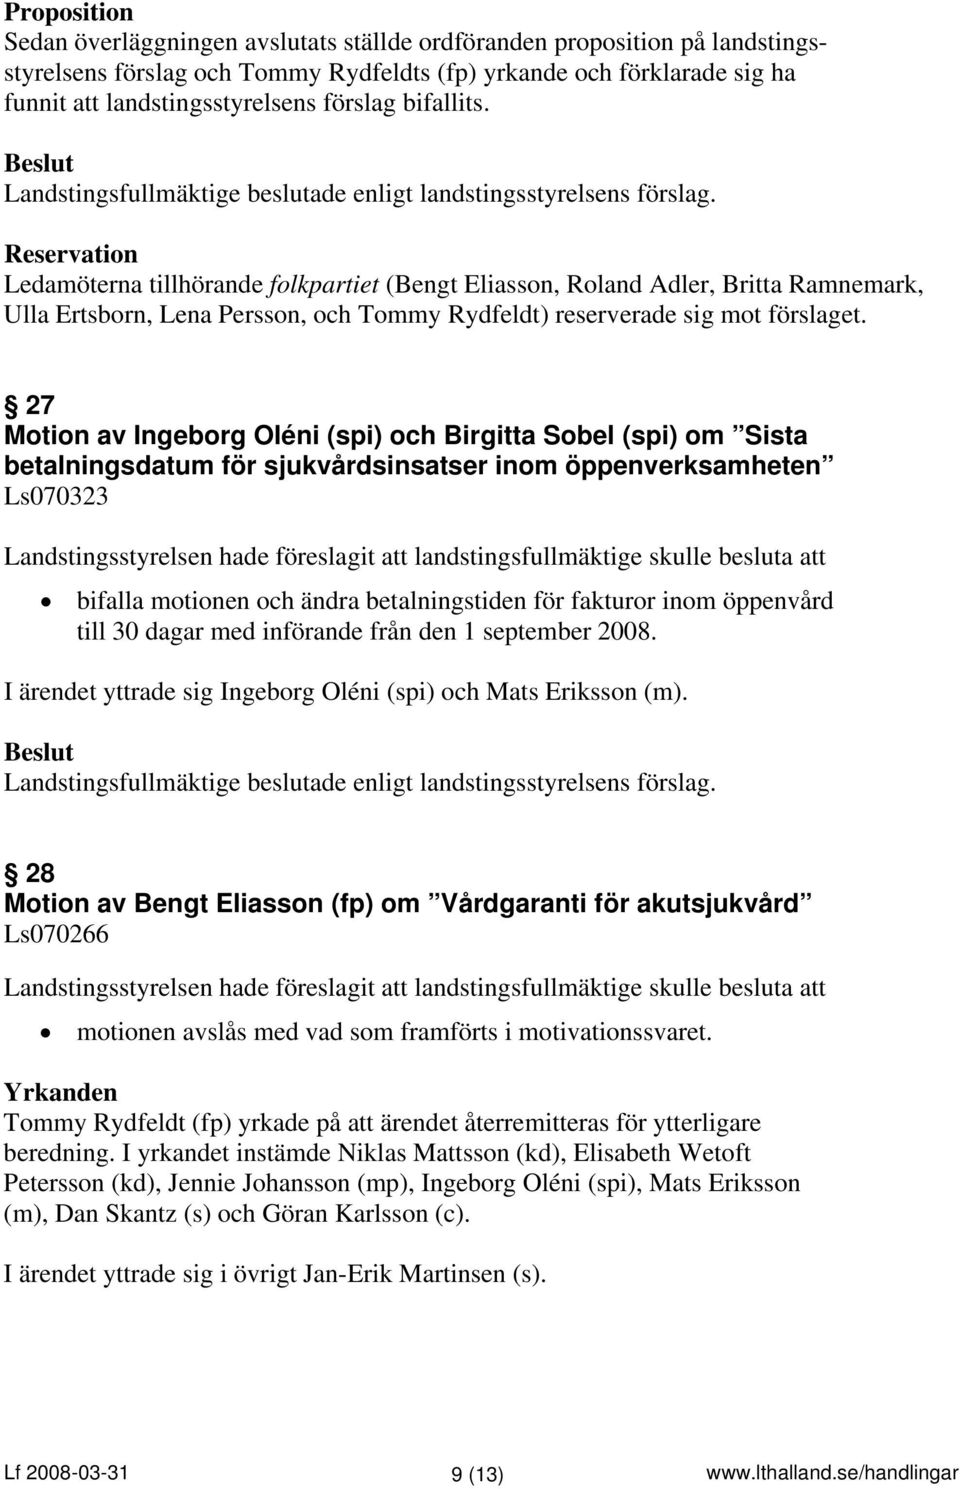 27 Motion av Ingeborg Oléni (spi) och Birgitta Sobel (spi) om Sista betalningsdatum för sjukvårdsinsatser inom öppenverksamheten Ls070323 bifalla motionen och ändra betalningstiden för fakturor inom